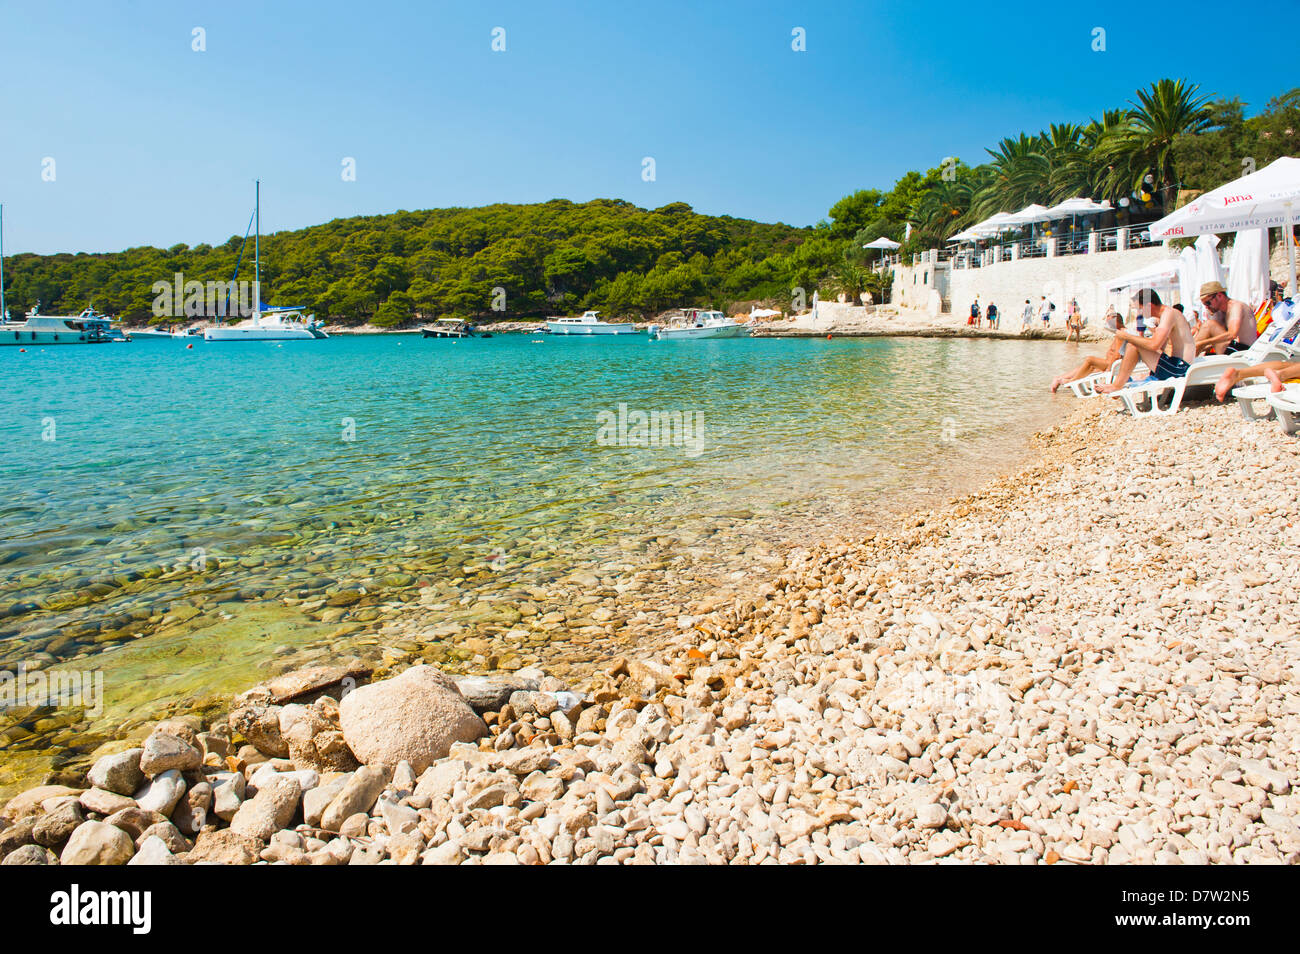 Plage, les îles Pakleni (Îles Paklinski), de la côte dalmate, Mer Adriatique, Croatie Banque D'Images